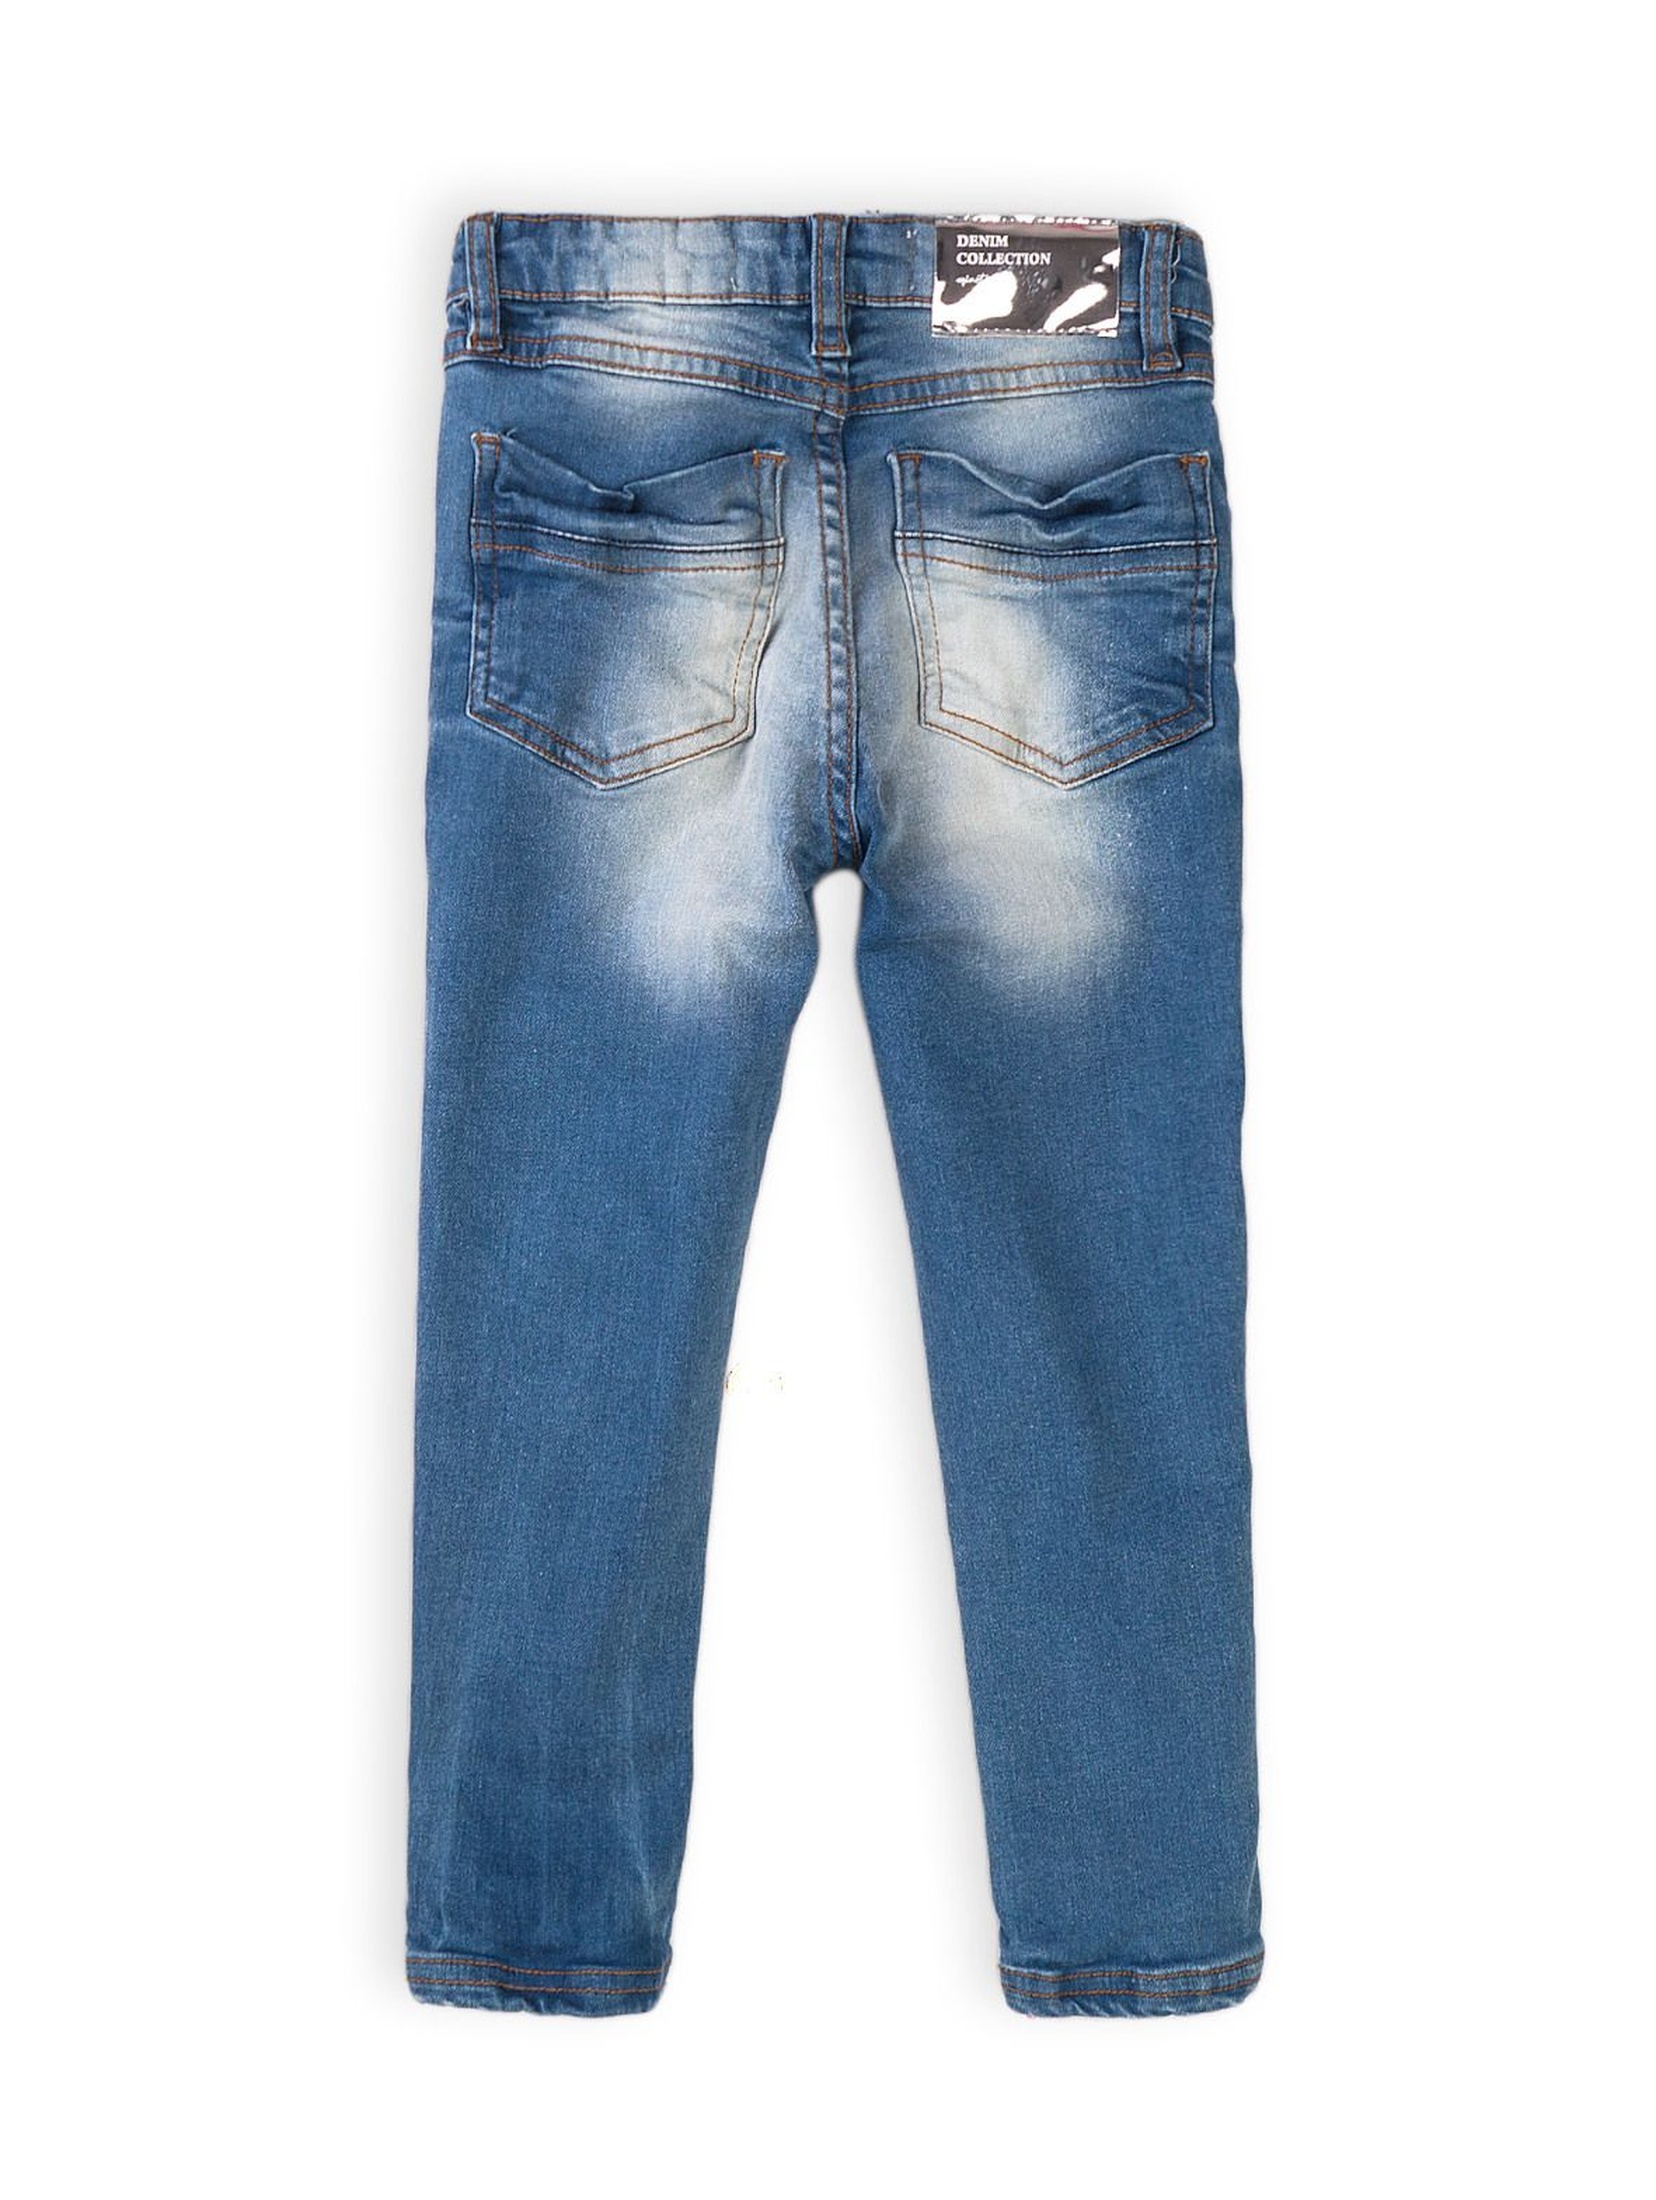 Spodnie dziewczęce jeansowe niebieskie- denim collection